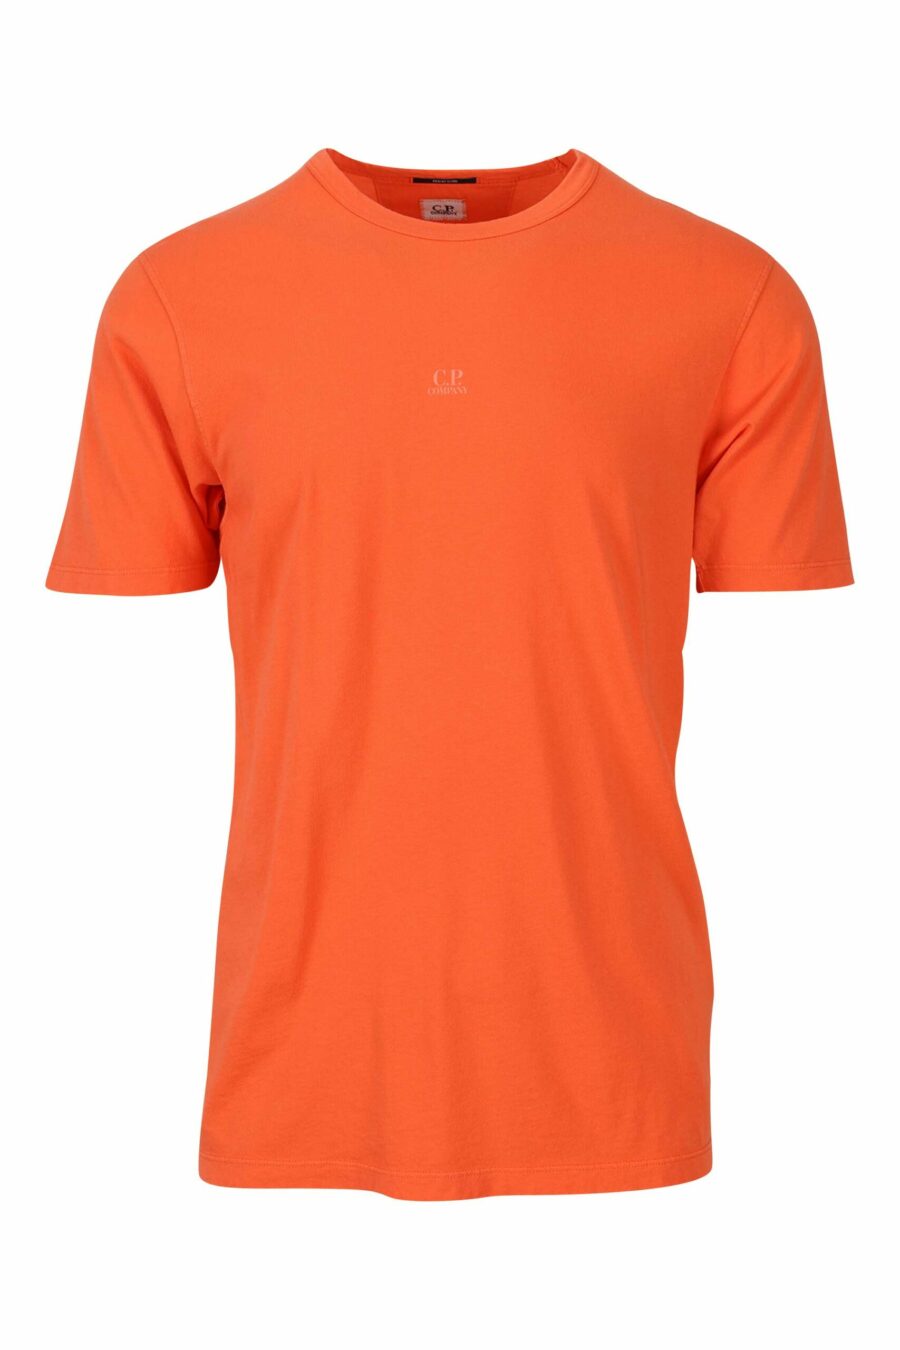 T-shirt orange avec minilogue centré - 7620943594928 1 scaled